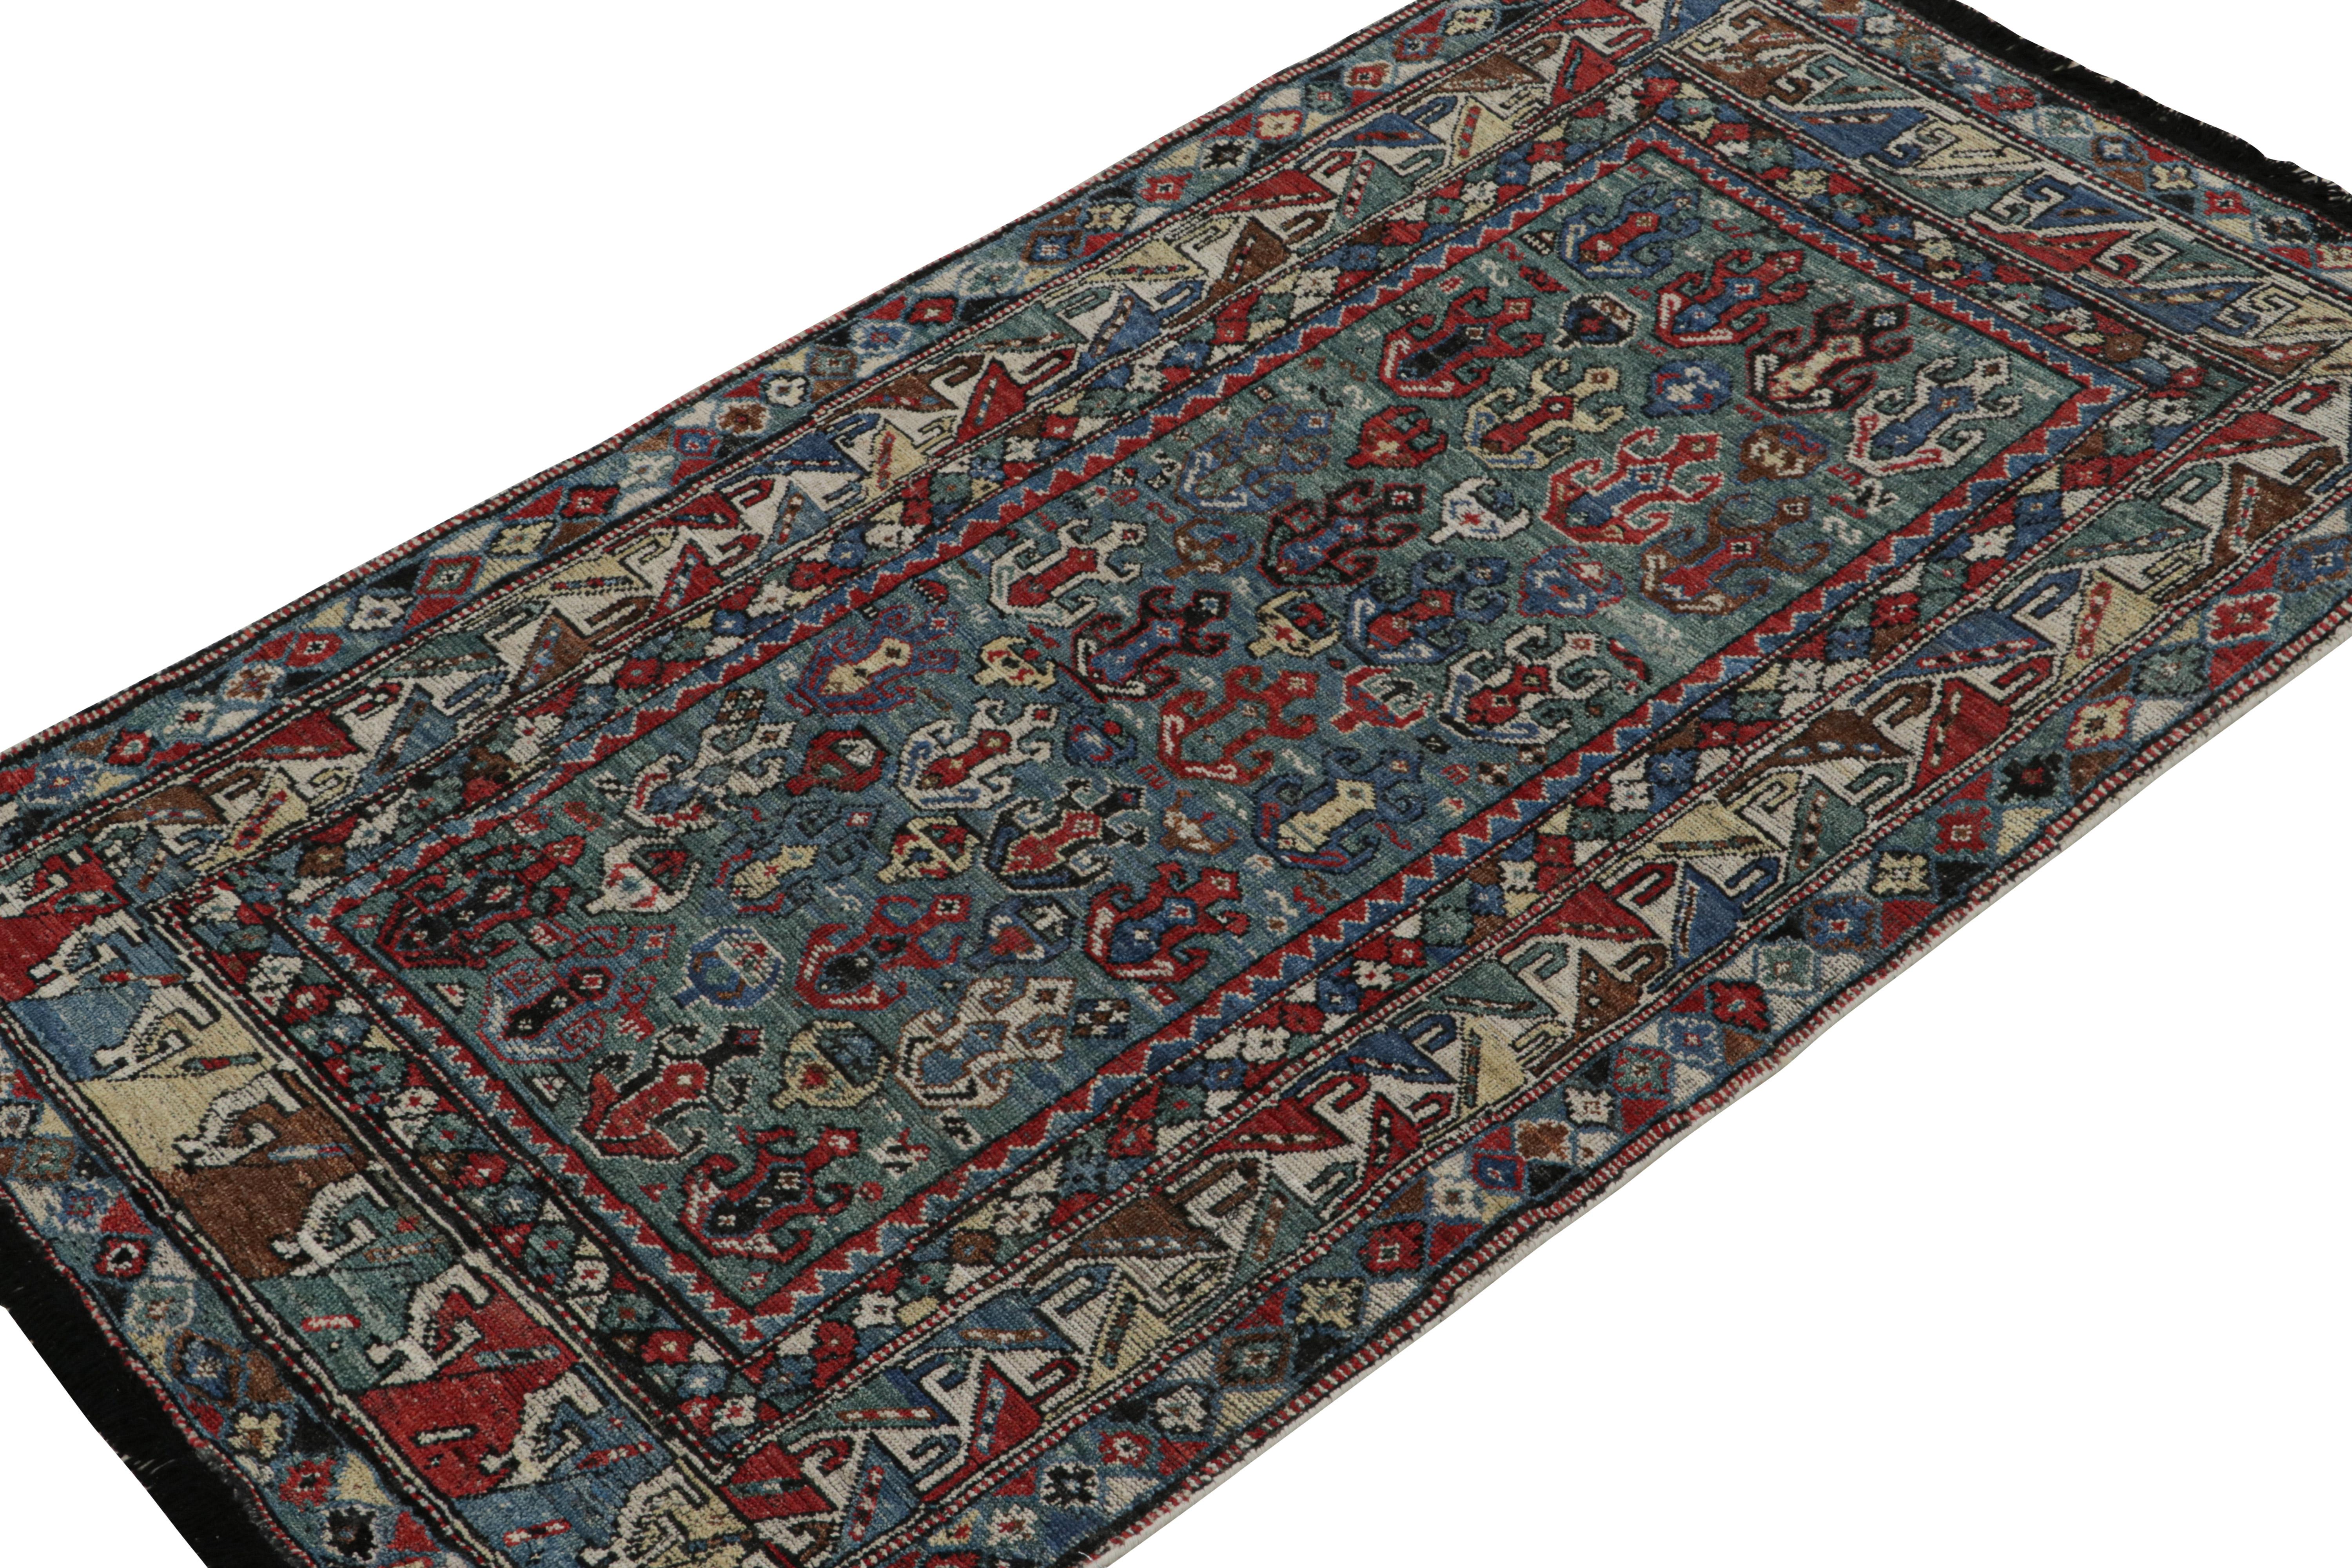 Ce tapis 4x7 est une nouvelle entrée grandiose dans la collection Burano de Rug & Kilim. Noué à la main en laine.

Plus loin dans le Design : 

Inspiré des anciens tapis tribaux, ce tapis se délecte de vert, de bleu et de rouge avec un mouvement